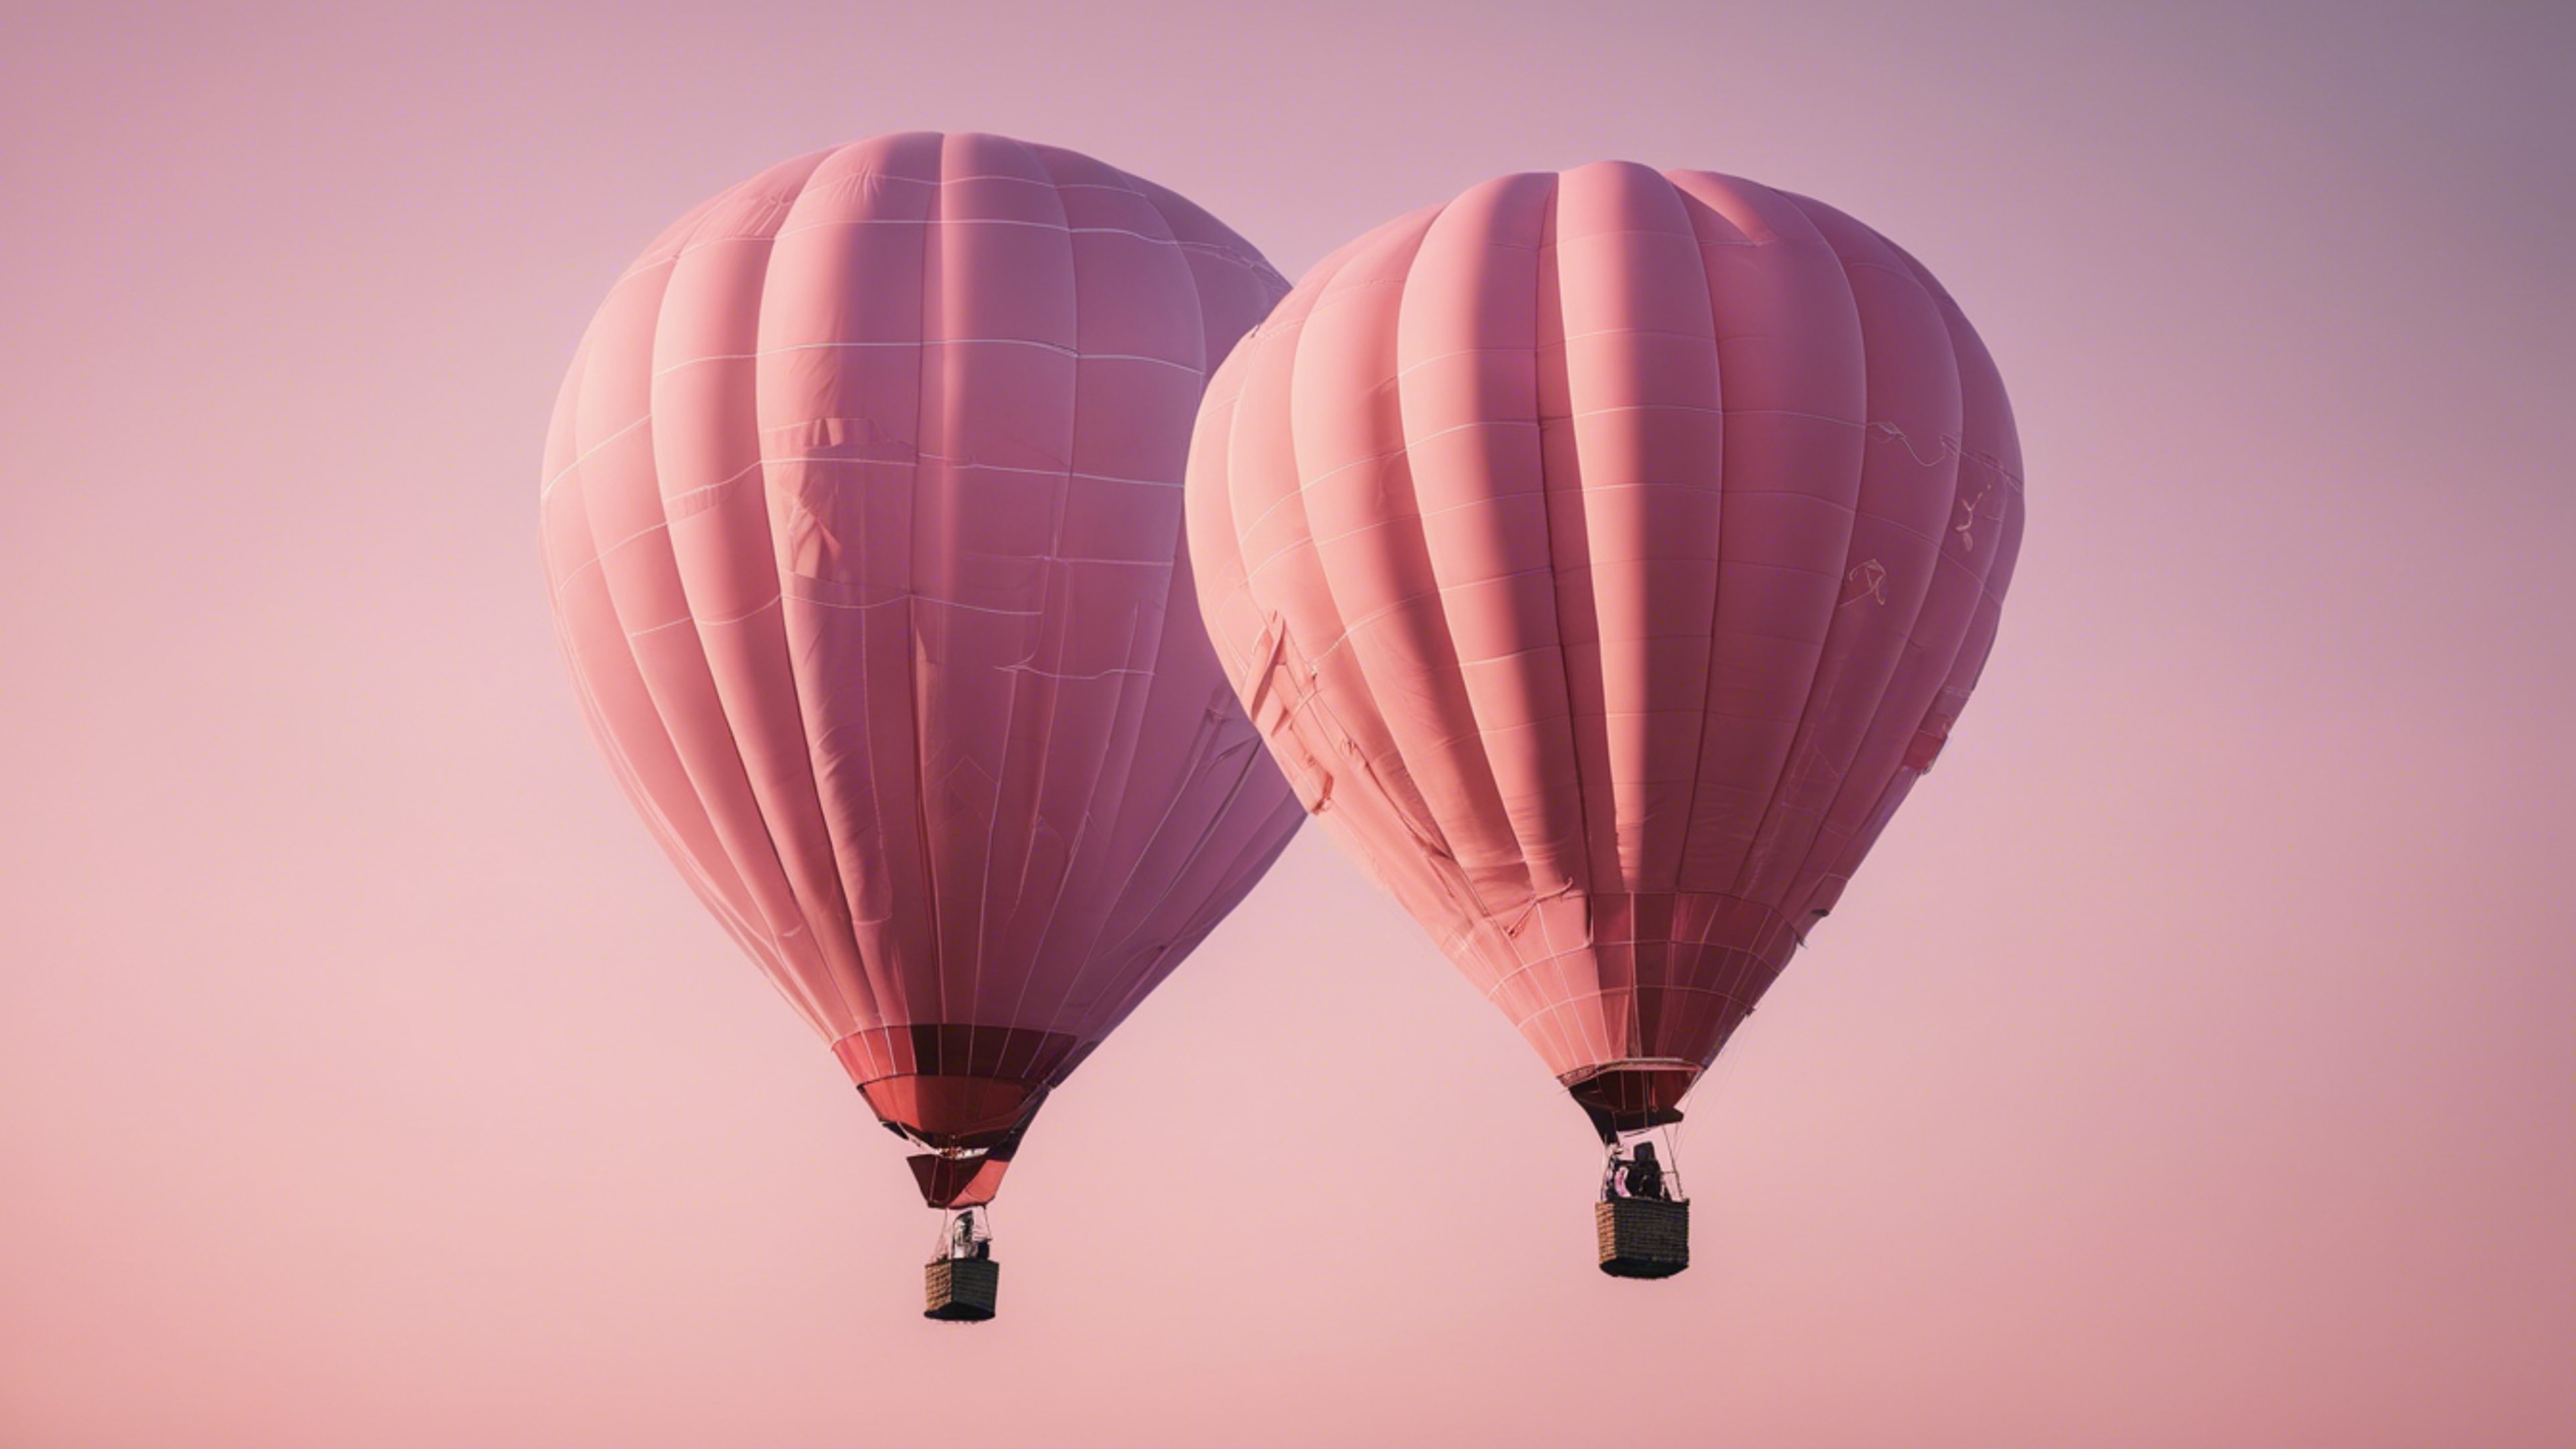 A light pink hot air balloon floating across a clear sky after sunrise. Tapeta[de0e3537891a4cb8b964]